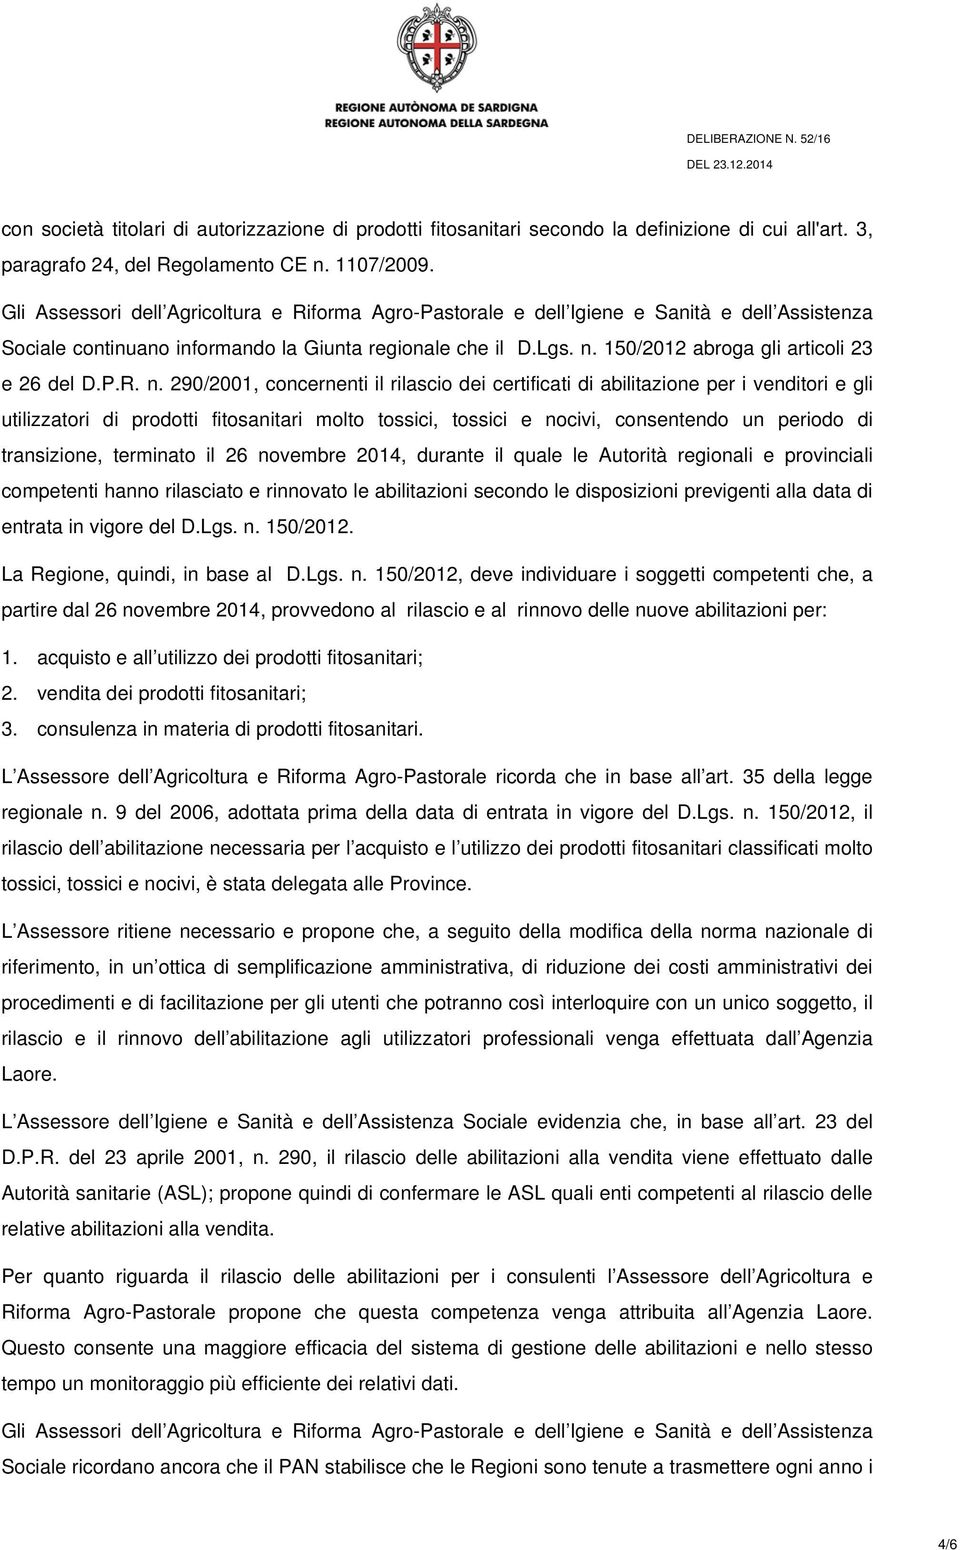 150/2012 abroga gli articoli 23 e 26 del D.P.R. n.